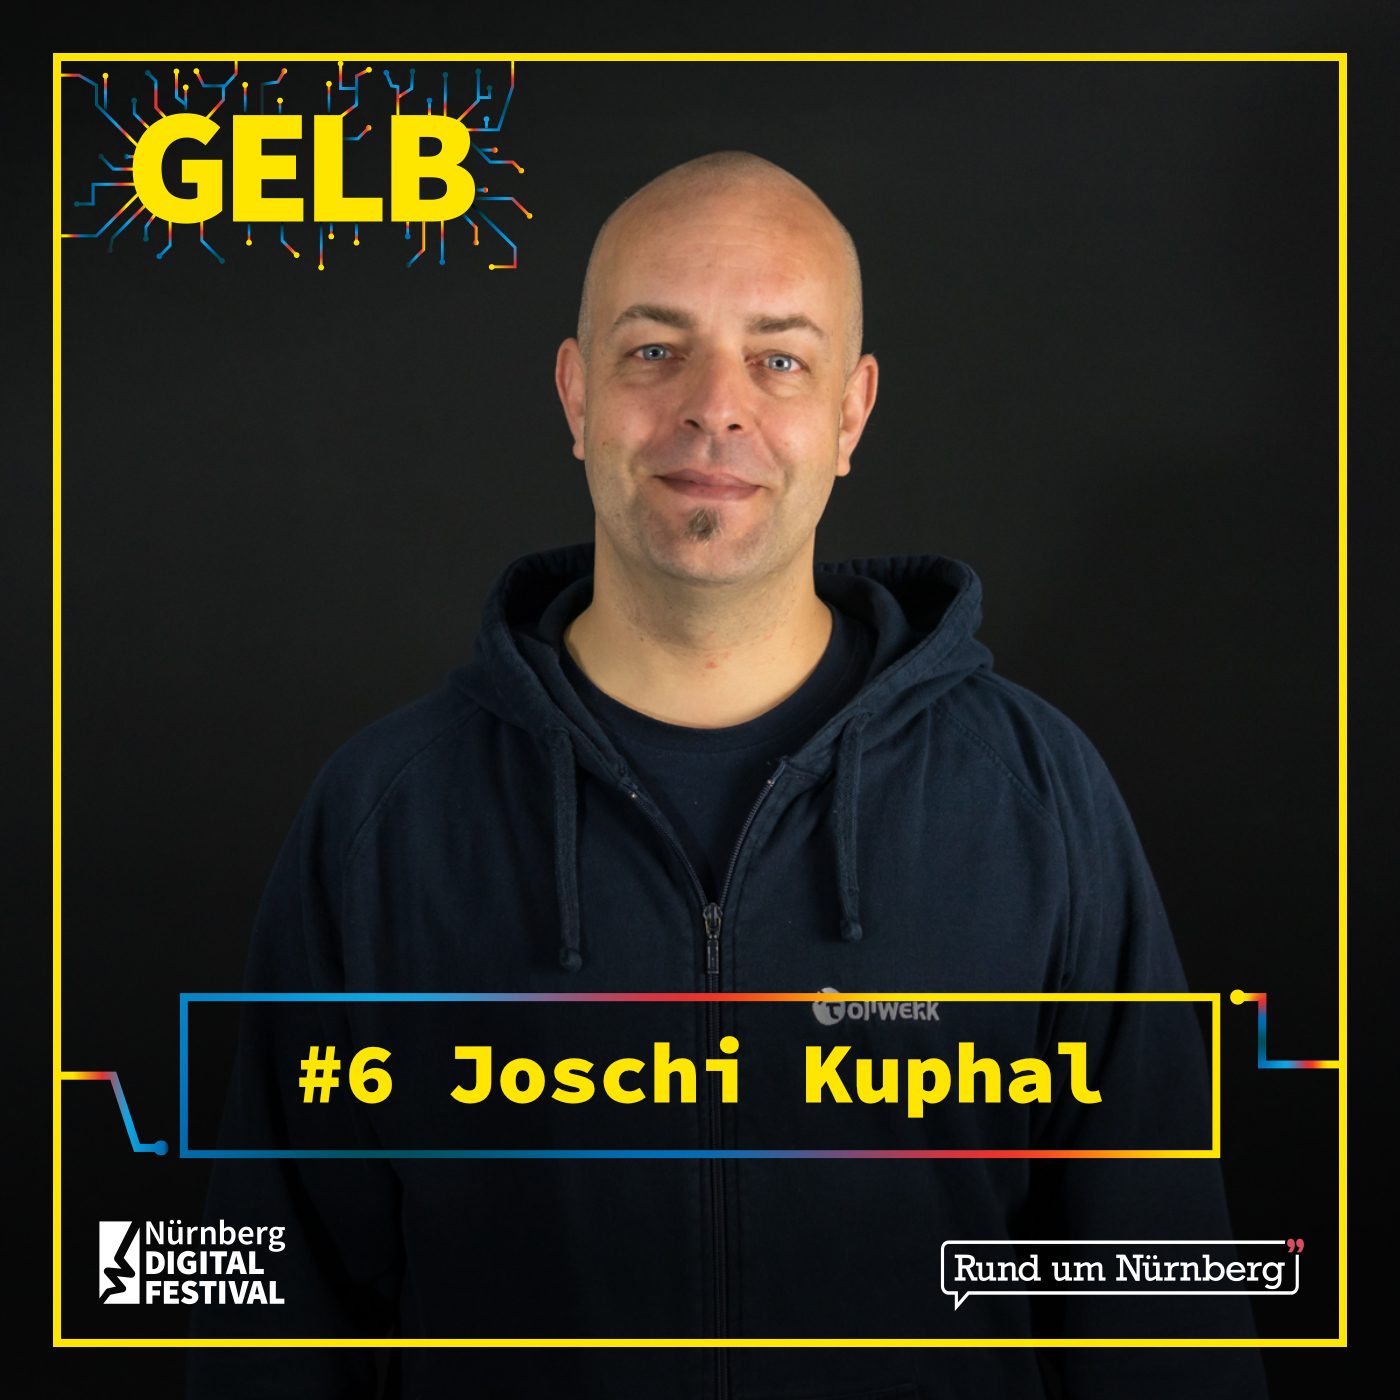 Coverbild des GELB-Podcasts mit einem Portrait von Joschi Kuphal vor dunklem Hintergrund. Joschi trägt einen dunkelblauen Hoodie und schaut in die Kamera. Am unteren Rand die Episodennummer #6, das Logo des Nürnberg Digital Festivals und das Rund-um-Nürnberg-Logo.